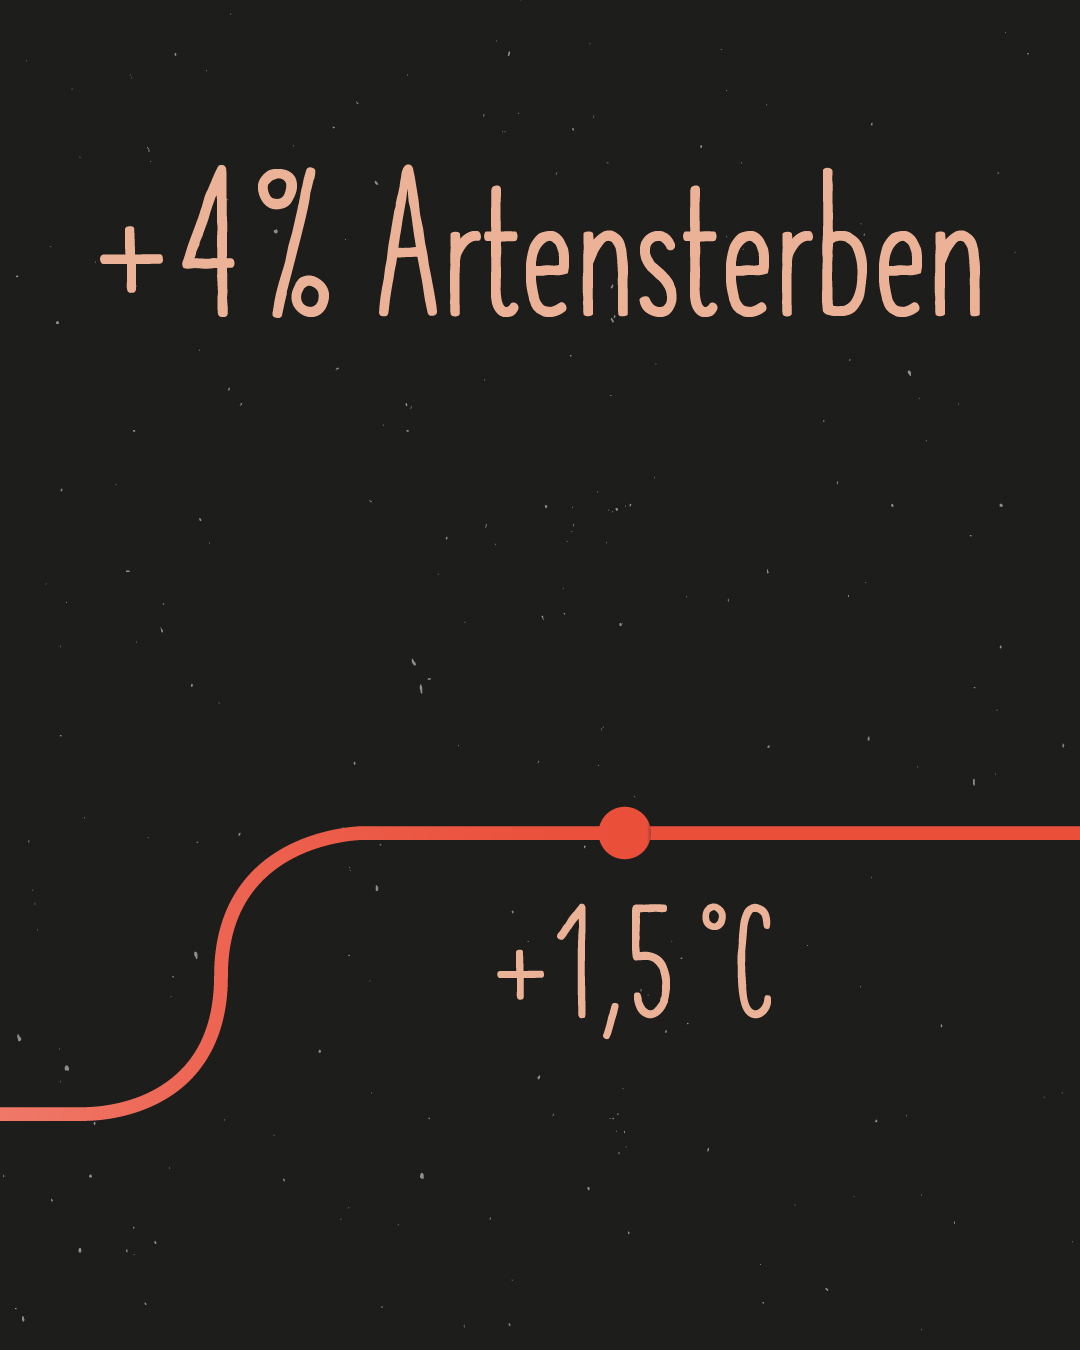 hellrosa auf schwarzem Hintergrund: +$% Artensterben. Unten im Bild verläuft eine rote Line nach oben mit der Bezeichnung +1,5 °C